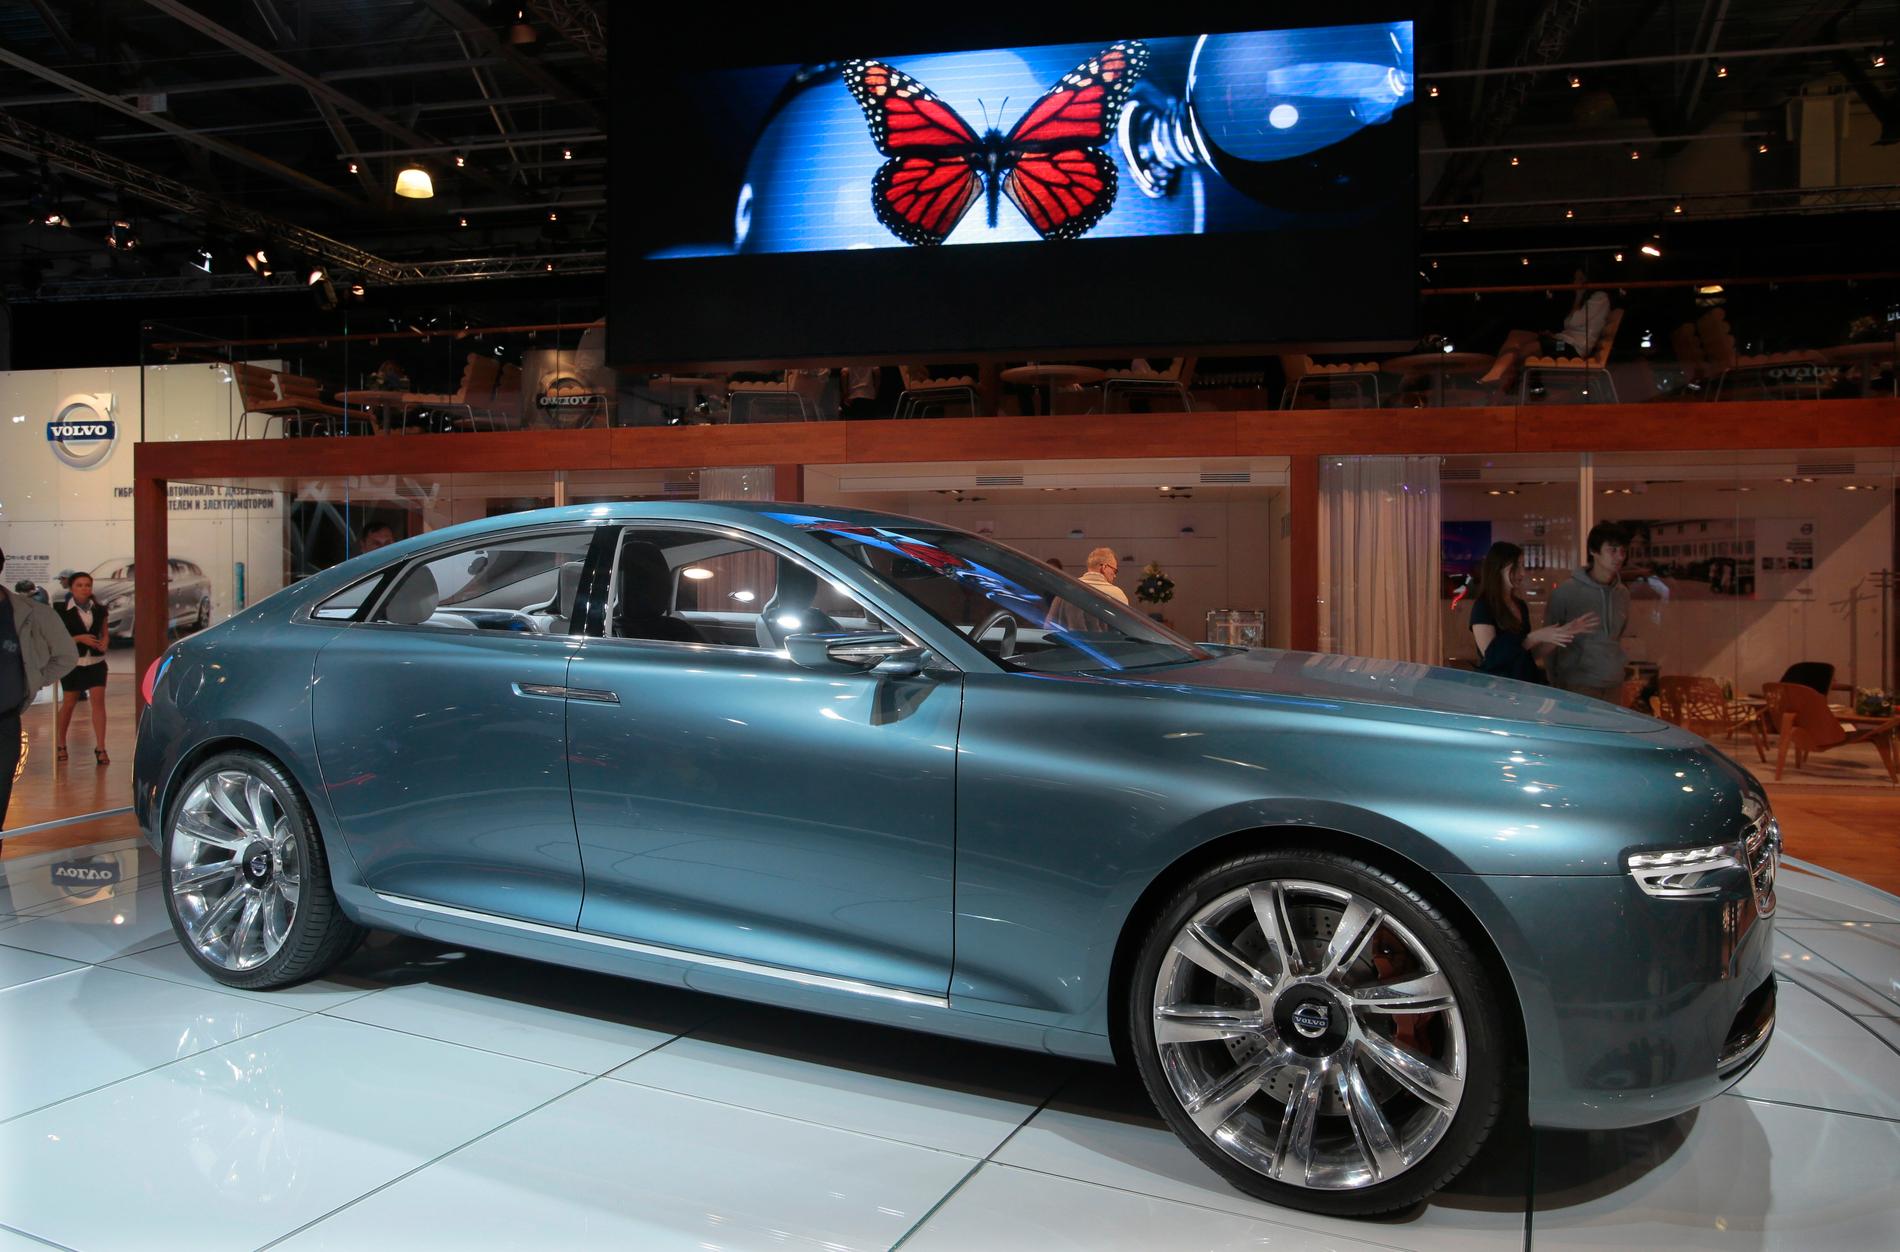 Volvo visade bland annat konceptbilen You på bilsalongen i Moskva förra veckan.